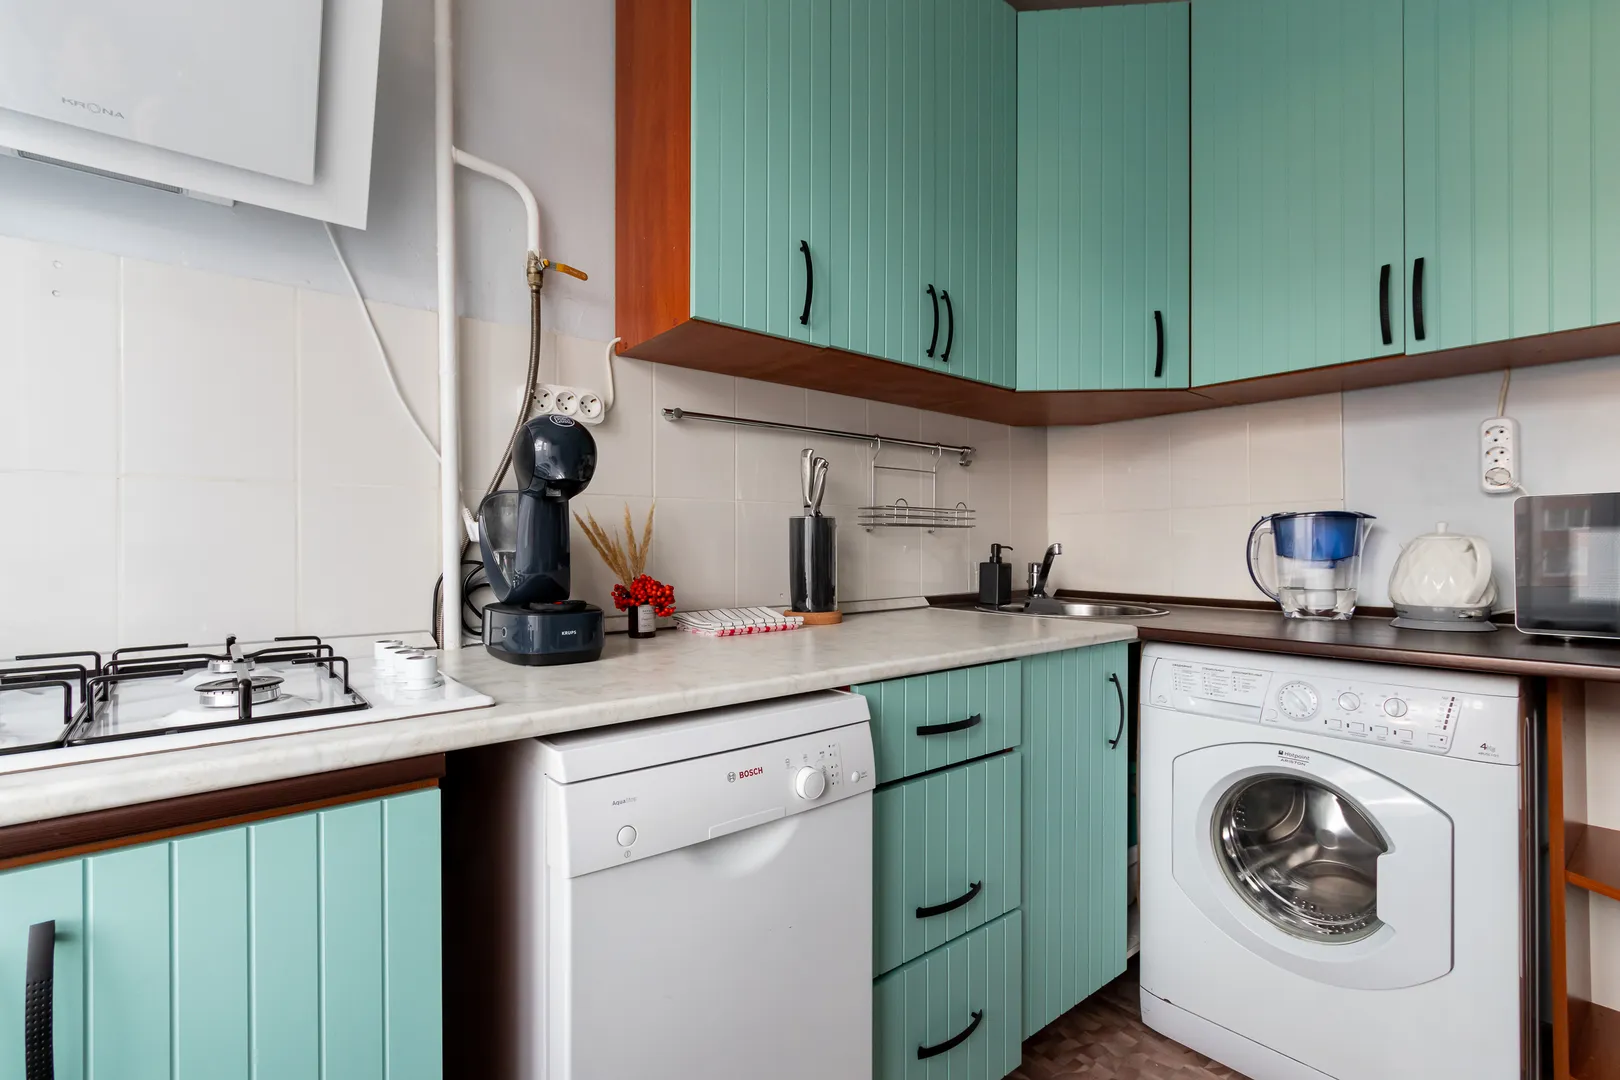 Кухня с газовой плитой, посудомоечной и стиральной машиной, кофемашиной, электрическим чайником, микроволновой печью и фильтром для воды